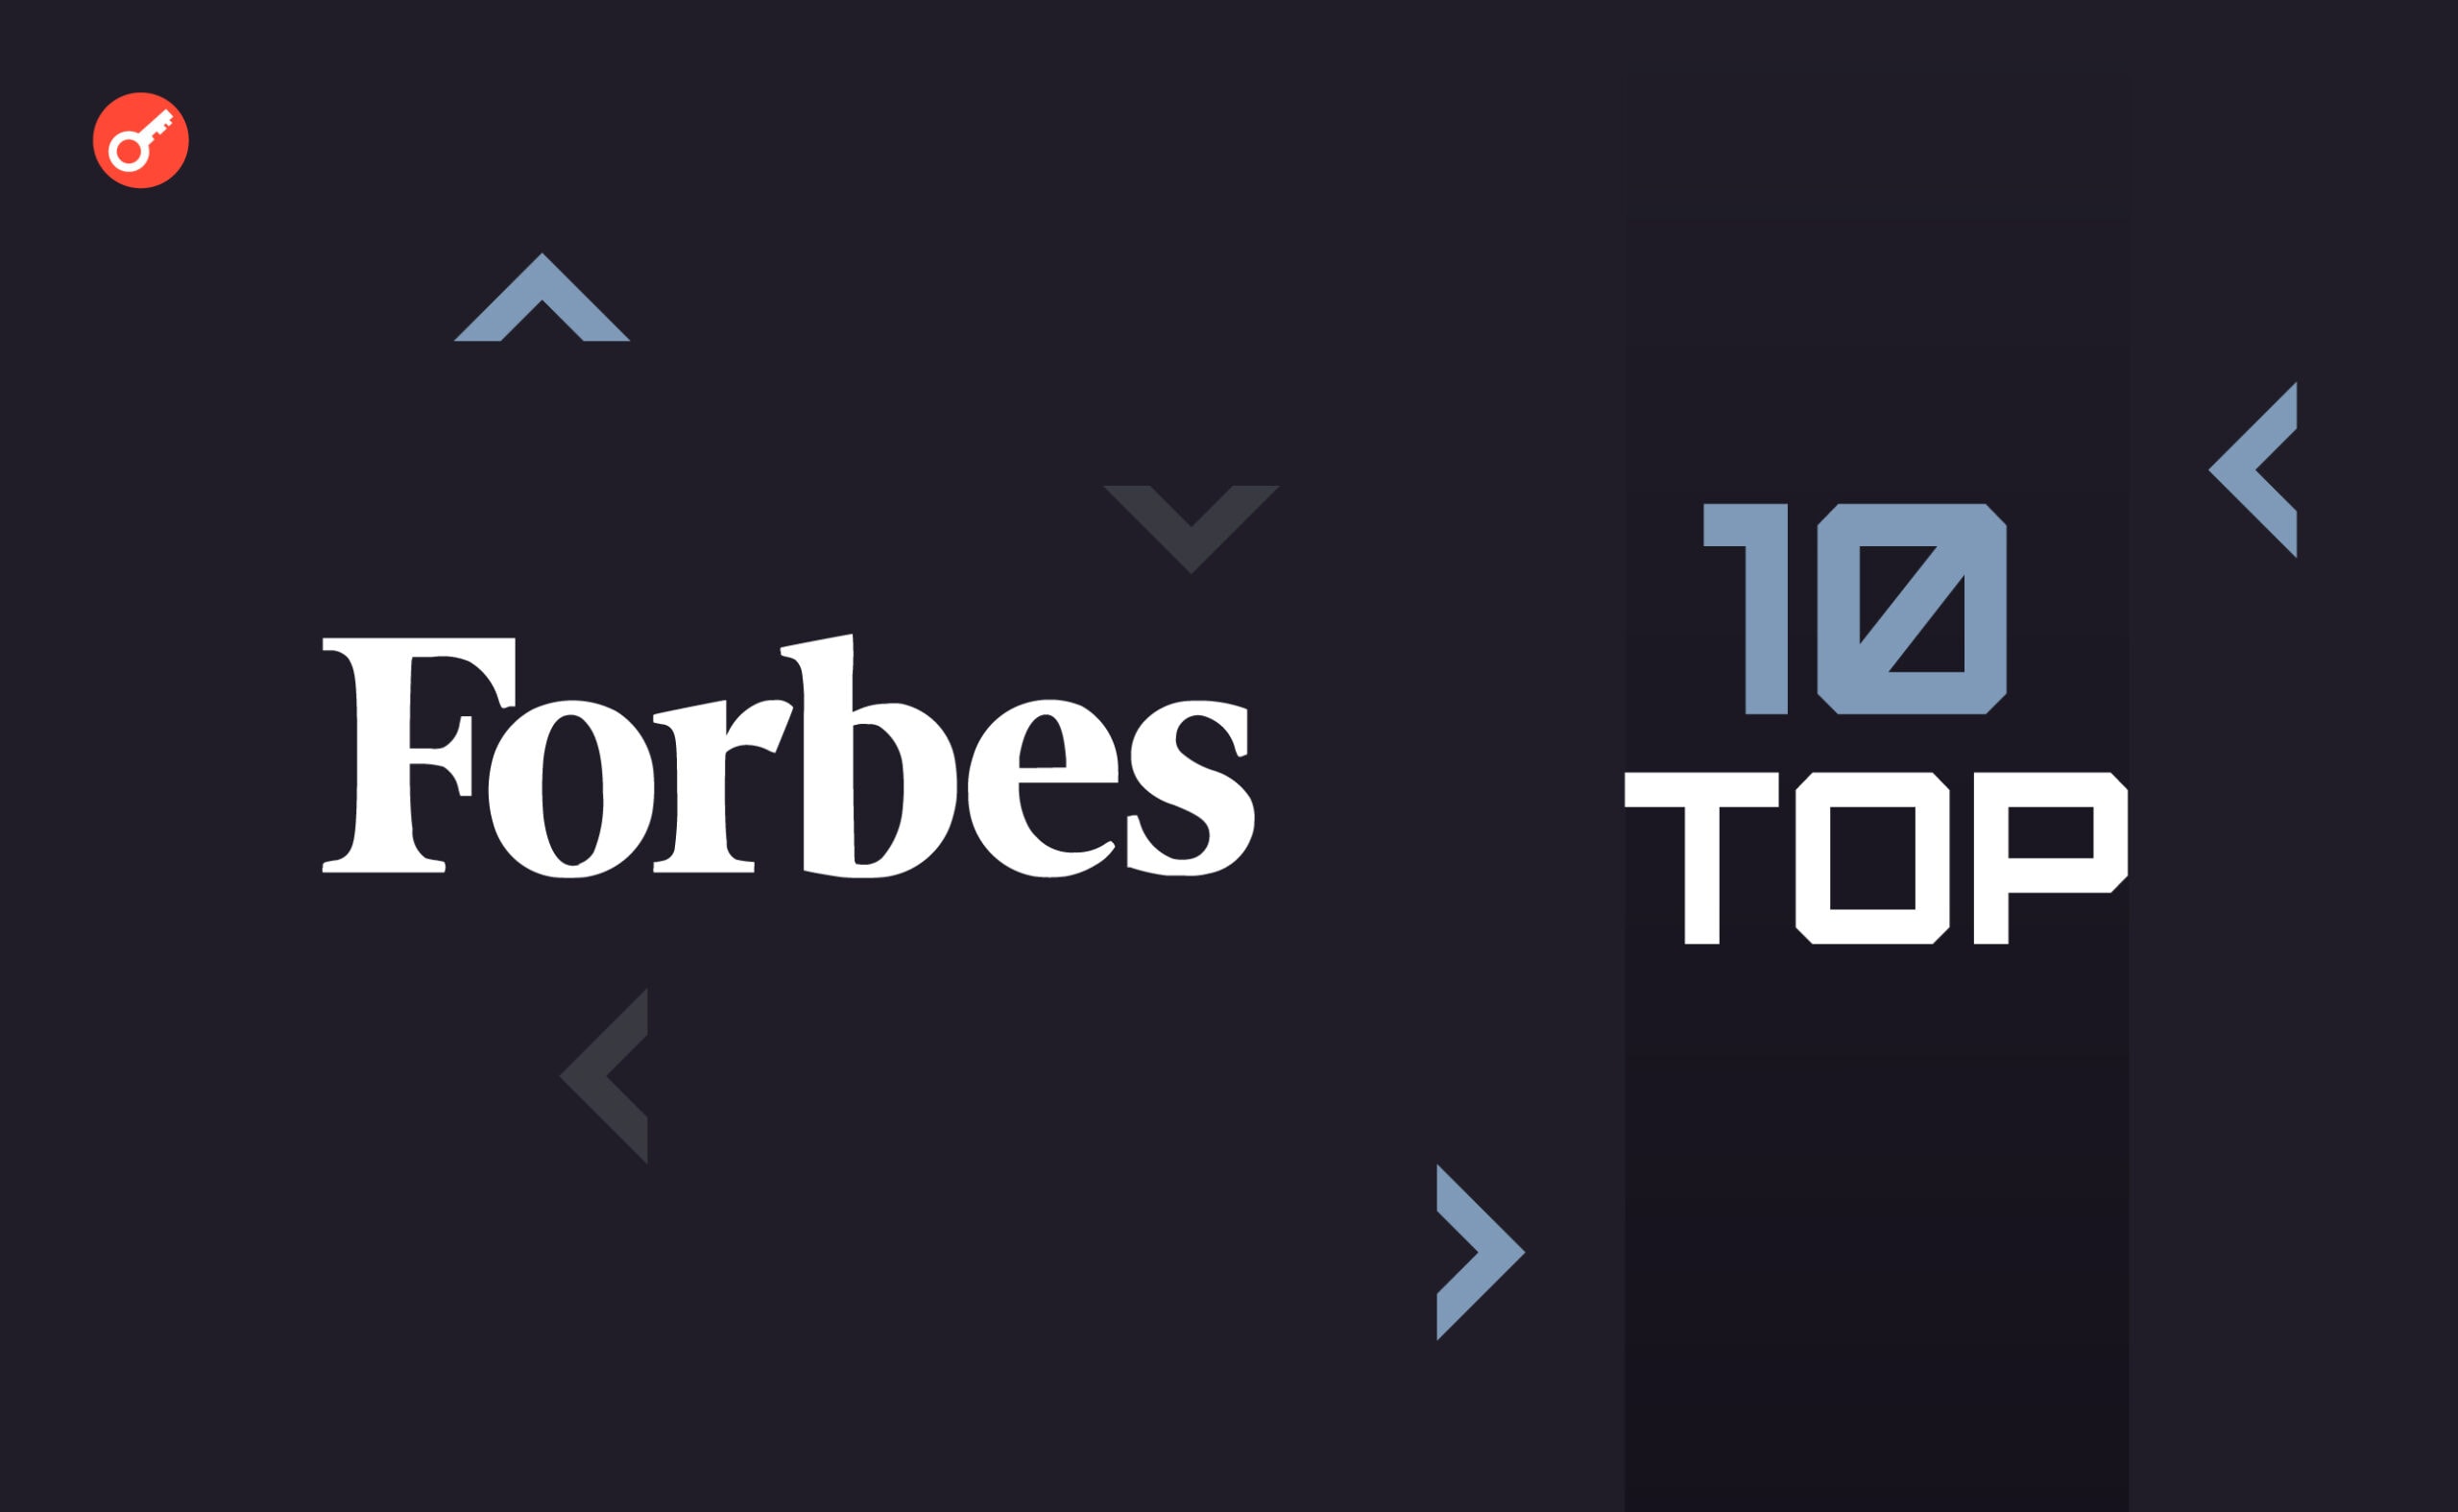 Forbes опублікував топ-10 найкращих фінтех-фірм у США. У списку є Ripple і OpenSea. Головний колаж новини.